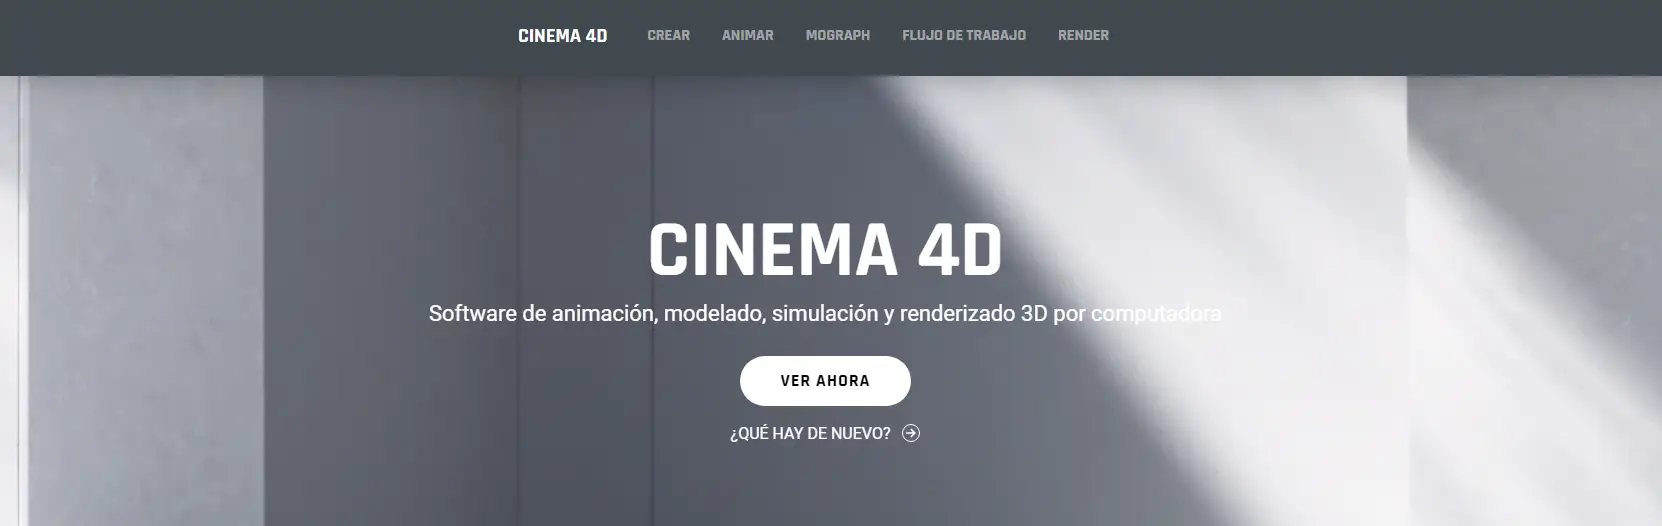 Cinema 4D Creación de Escenografías con Elementos Avanzados de Animación